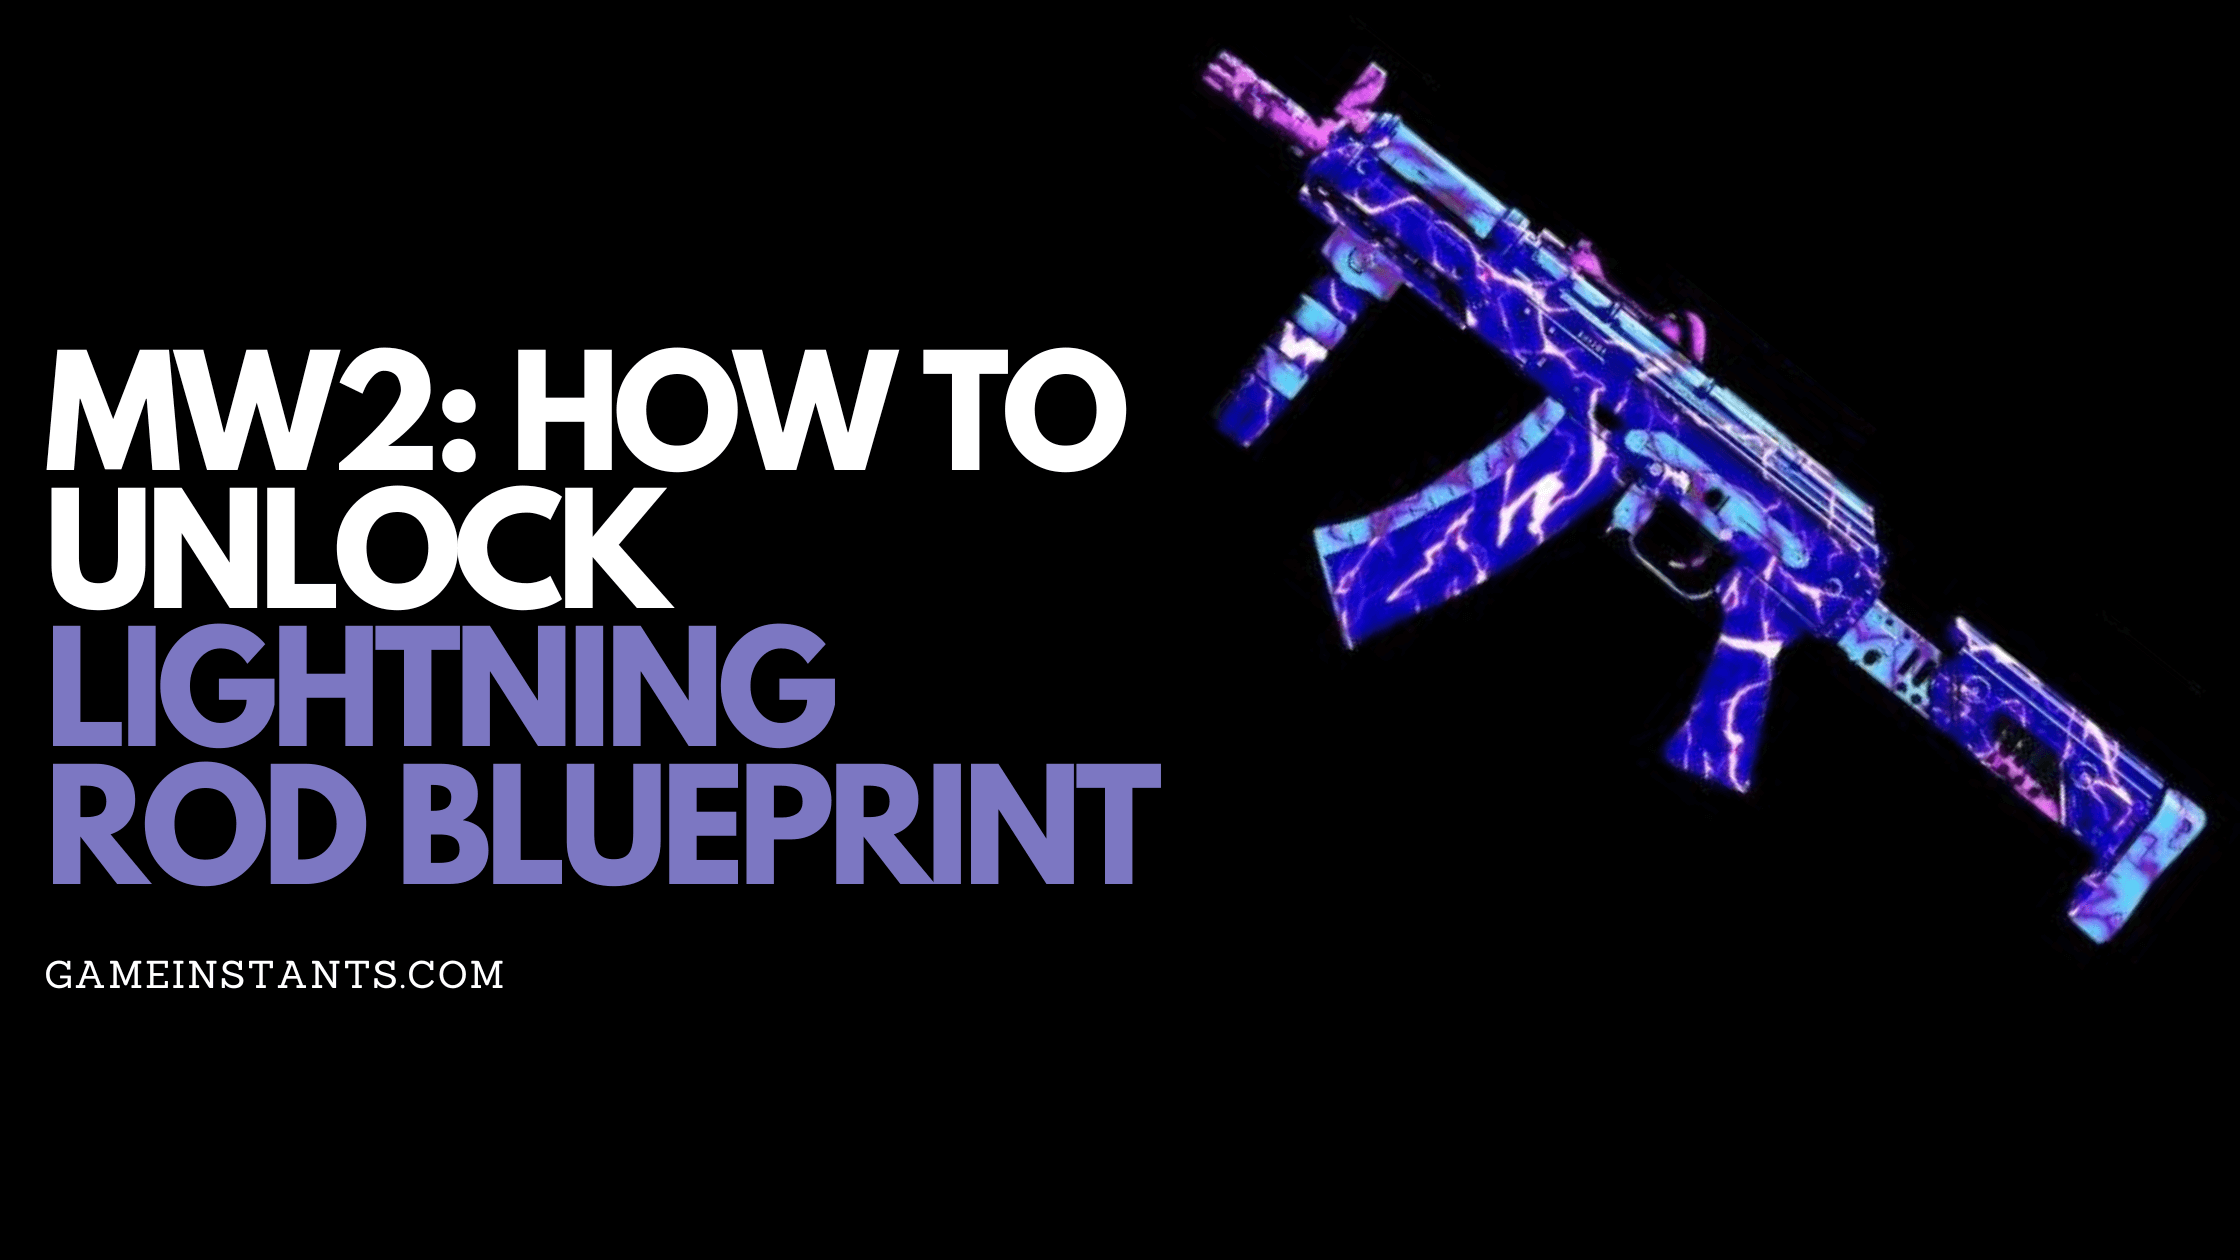 Unlock Lightning Rod Blueprint